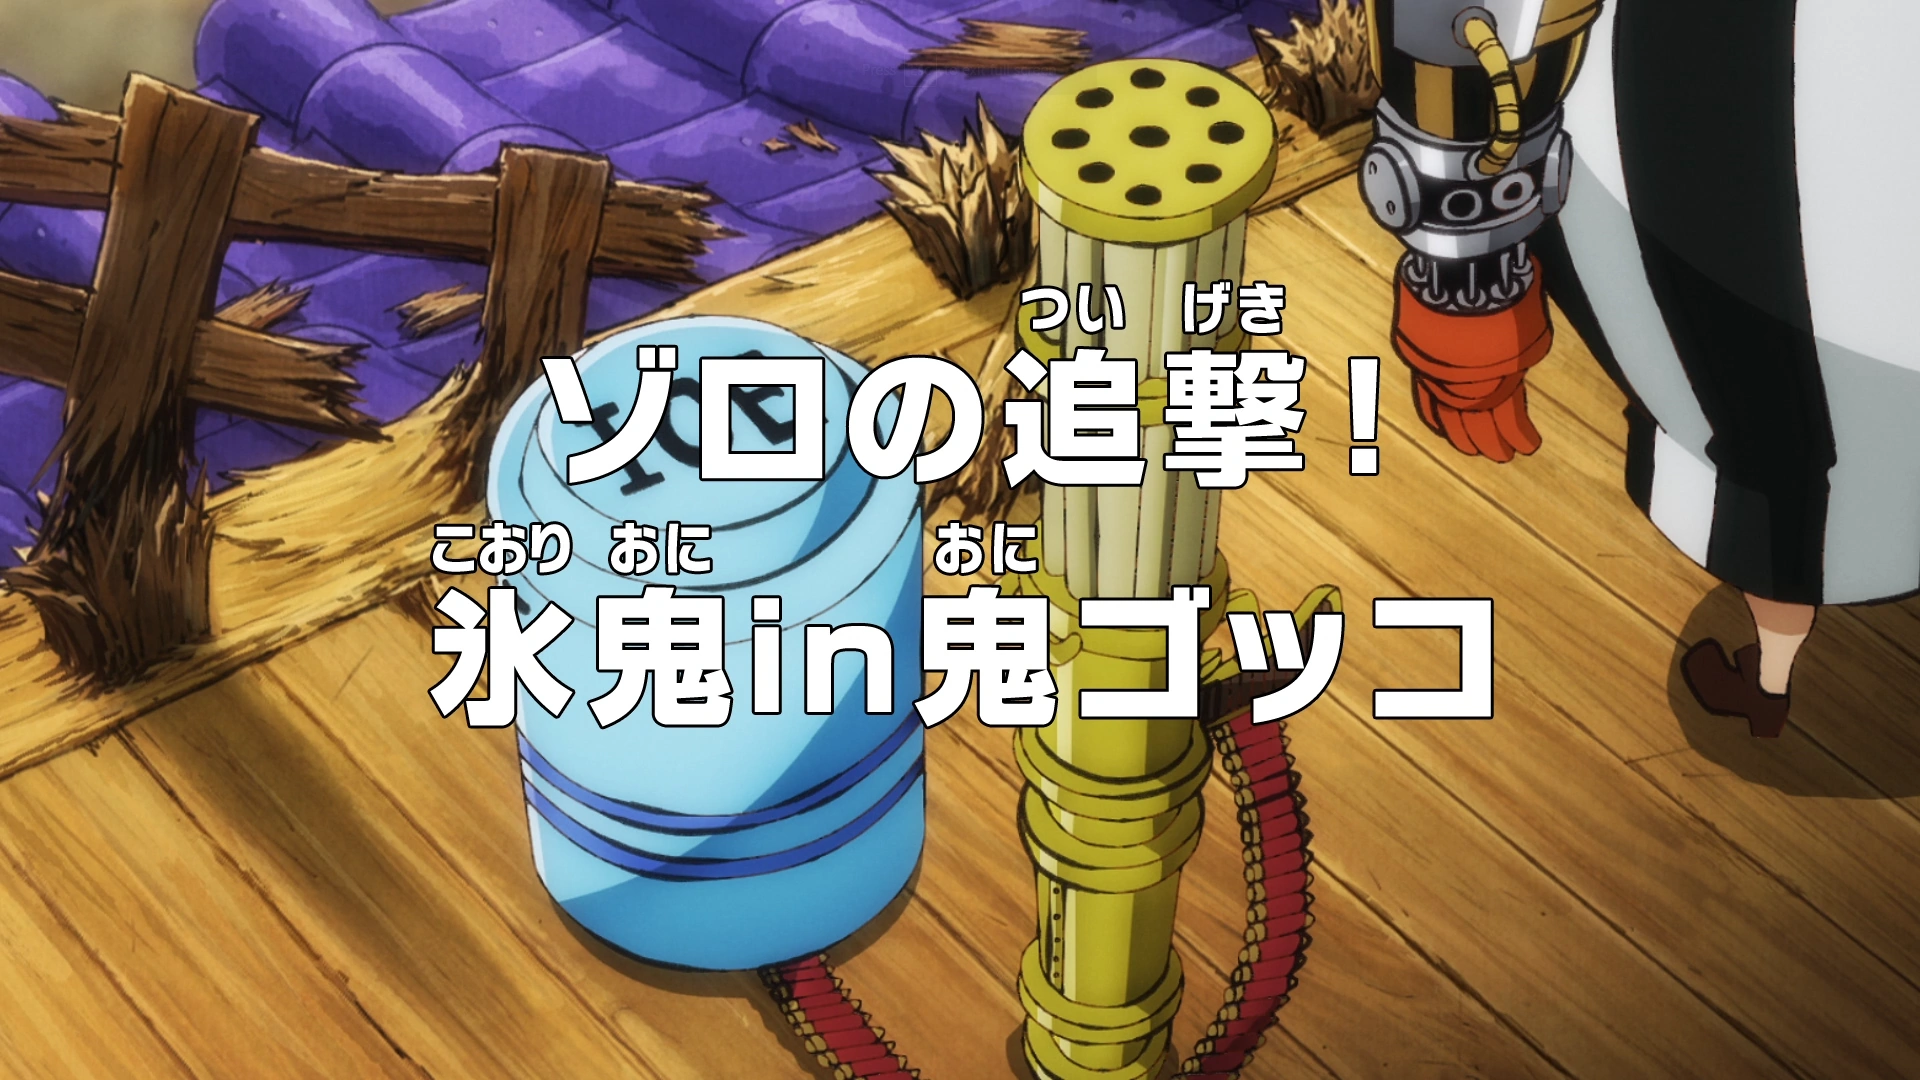 Kirigawa on X: A Toei adaptou 11 páginas do capítulo 991 no episódio 1002  de One Piece!! Imaginei que após o Ep 1000 a Toei começaria a adaptar mais  capítulos por episódio